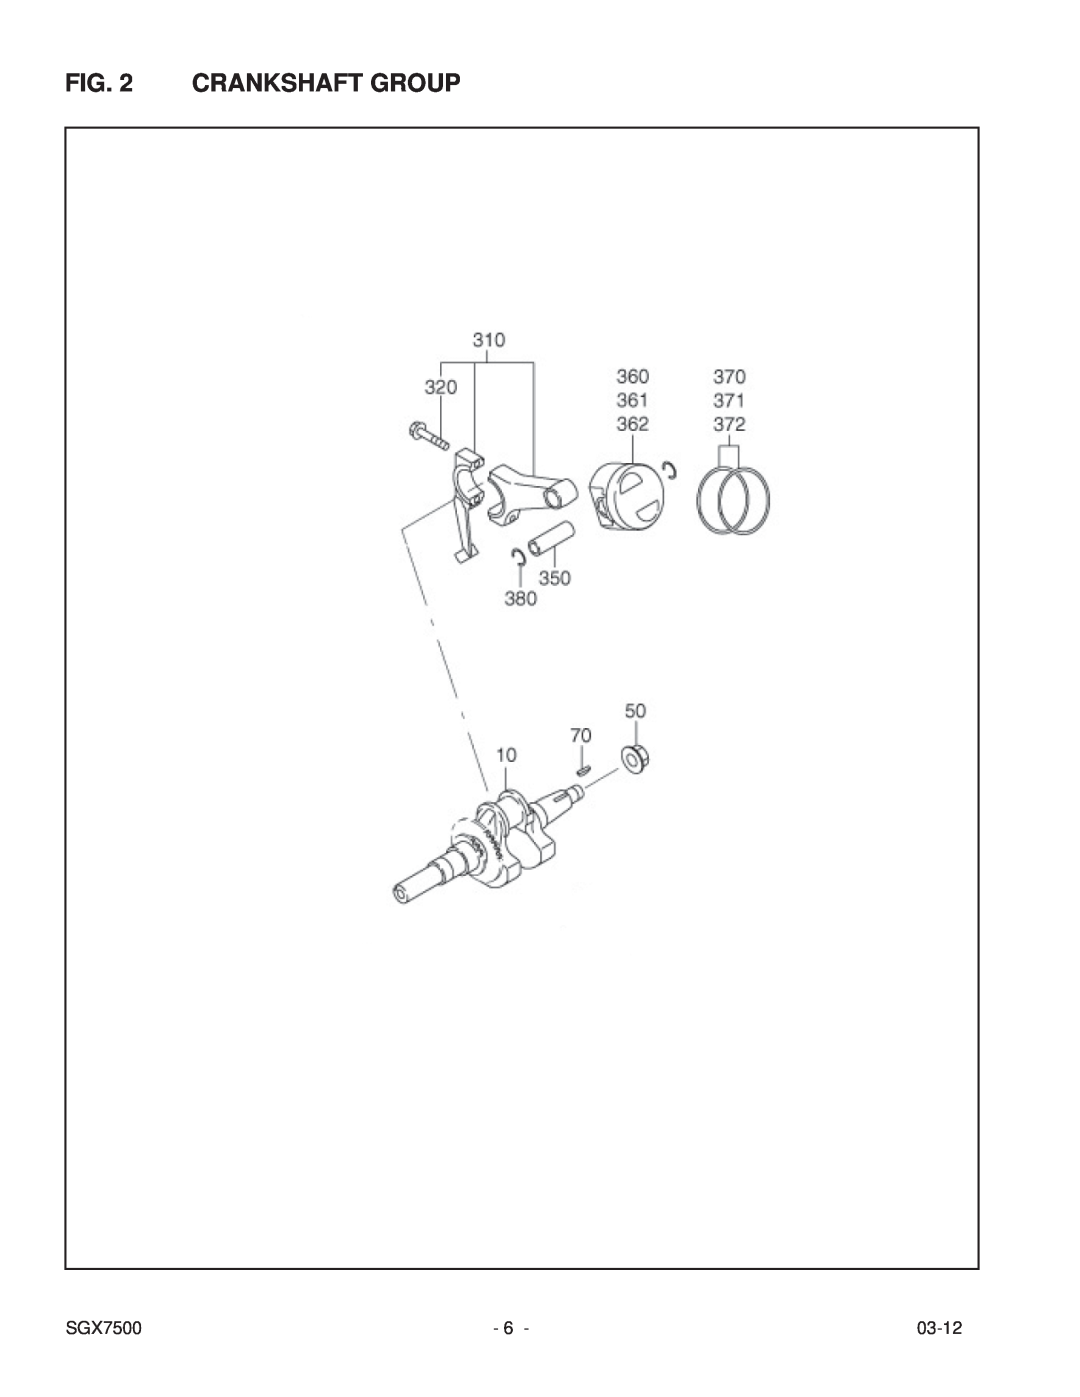 Subaru SGX7500 manual Crankshaft Group, 03-12 